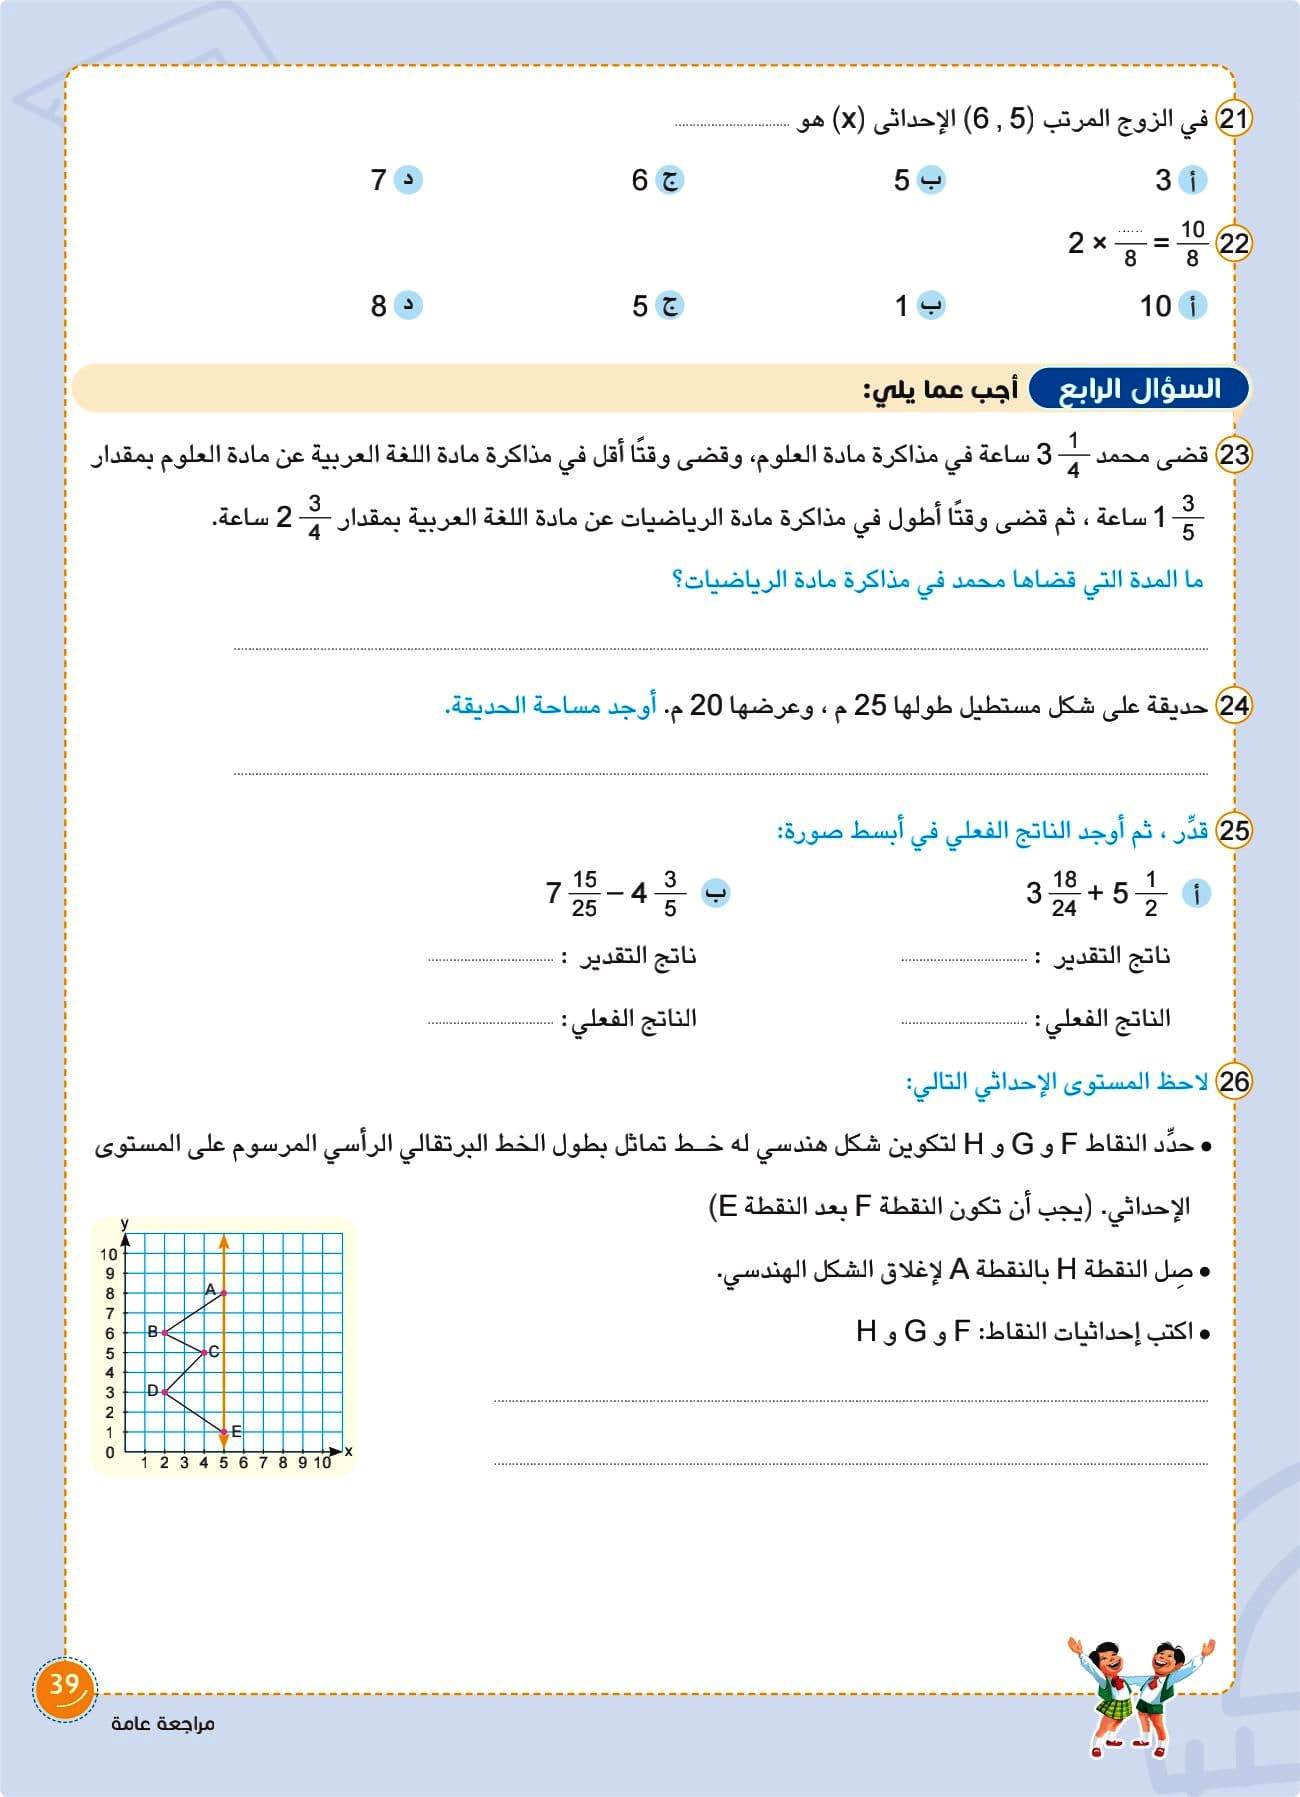 مدرس دوت كوم كتاب سلاح التلميذ مراجعة رياضيات للصف السادس الابتدائى الترم الاول أ/ محمد حمدى	